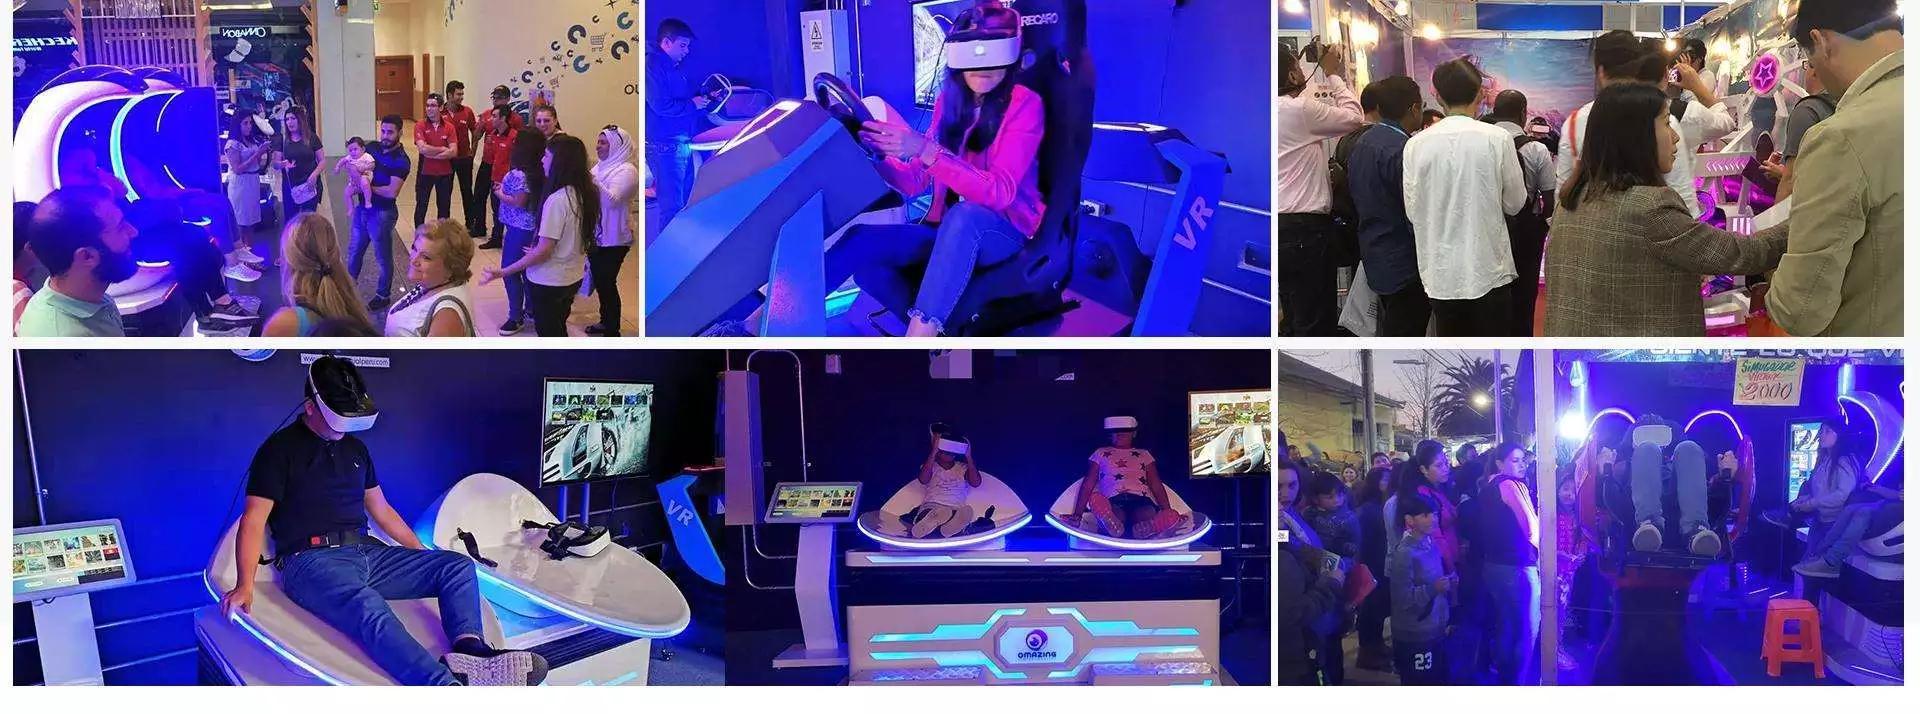 9D vr 6 Asientos VR Cinema Simulator en venta